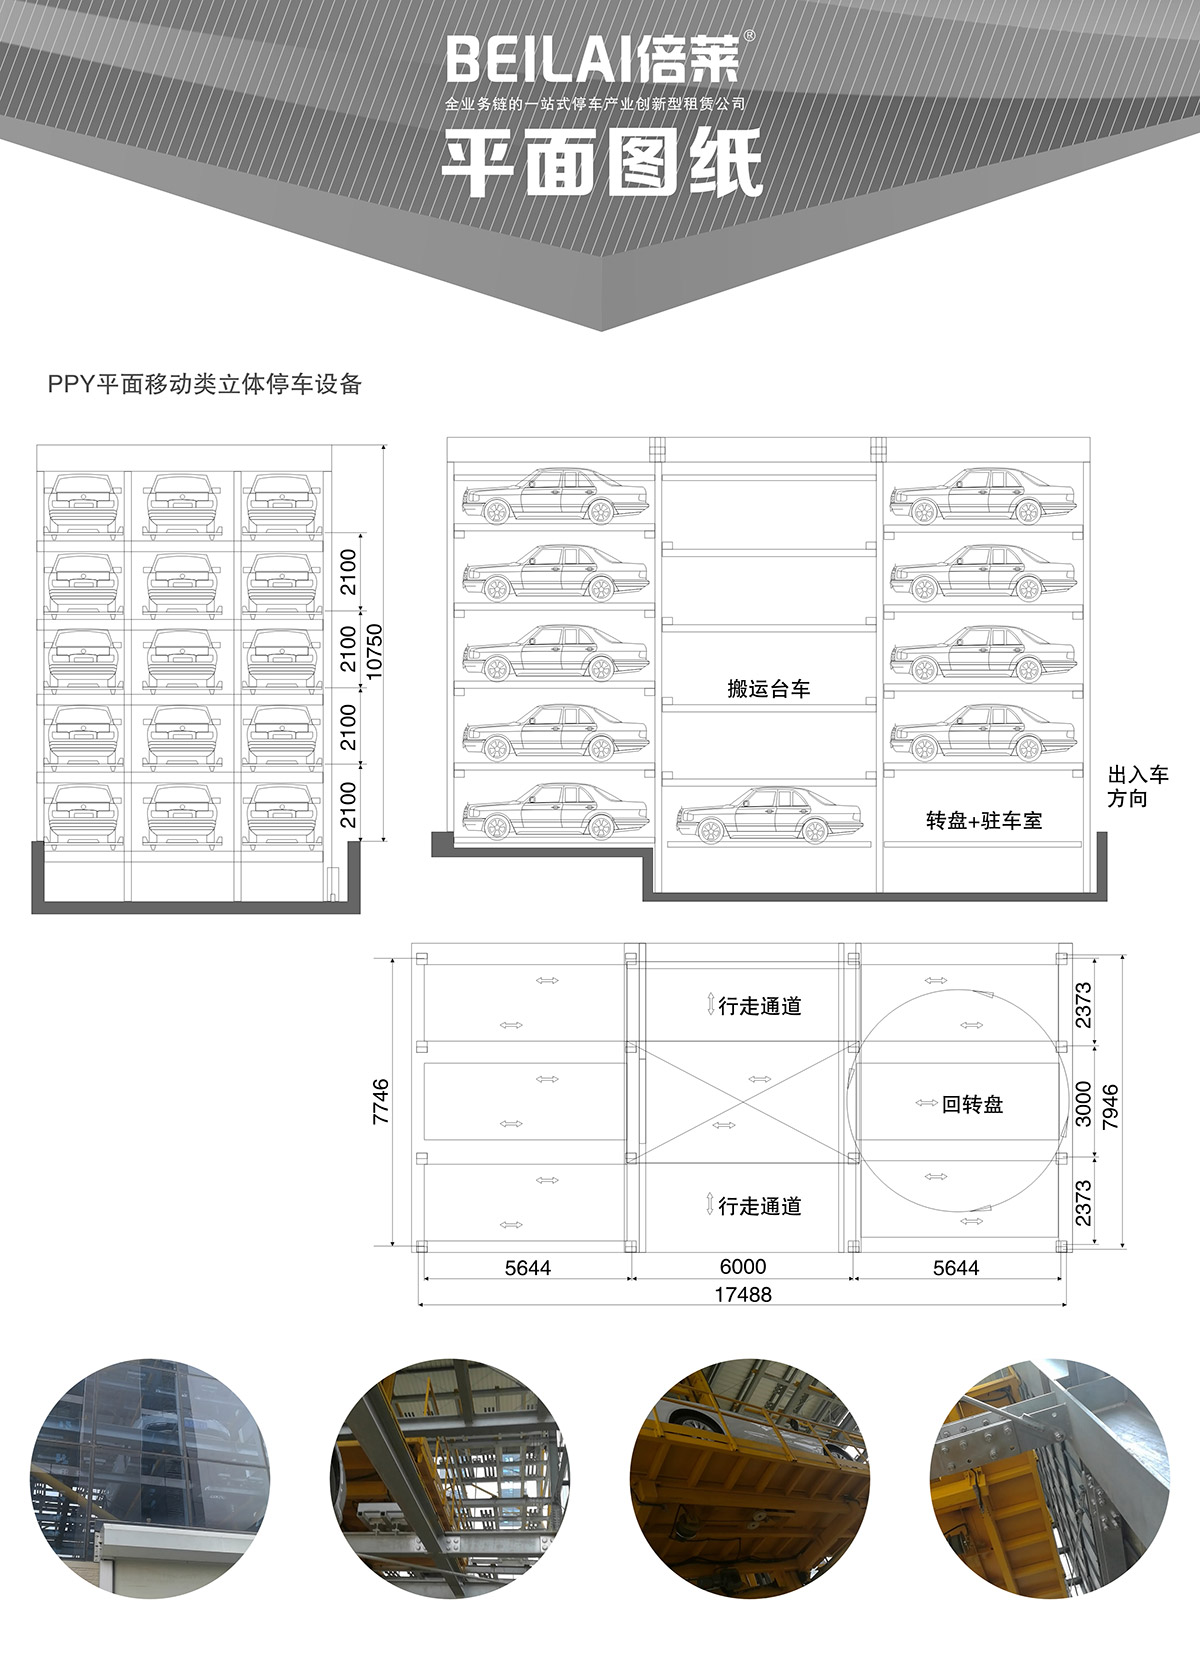 四川平面移动立体停车设备平面图纸.jpg